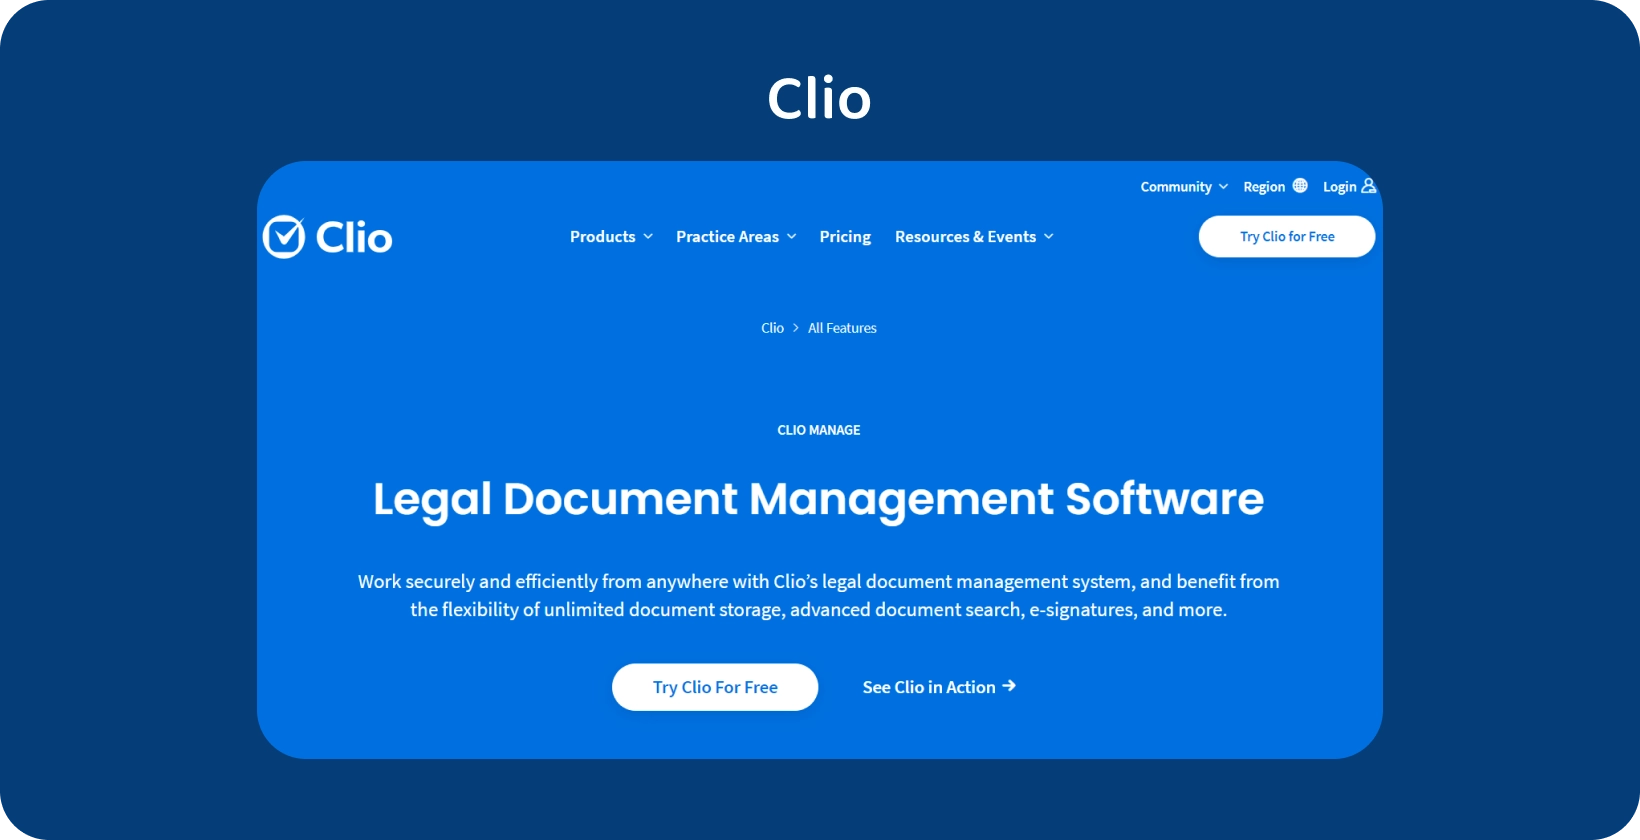 Die Benutzeroberfläche von Clio zeigt seine Legal Document Management Software und optimiert die Verwaltung organisierter Datensätze.